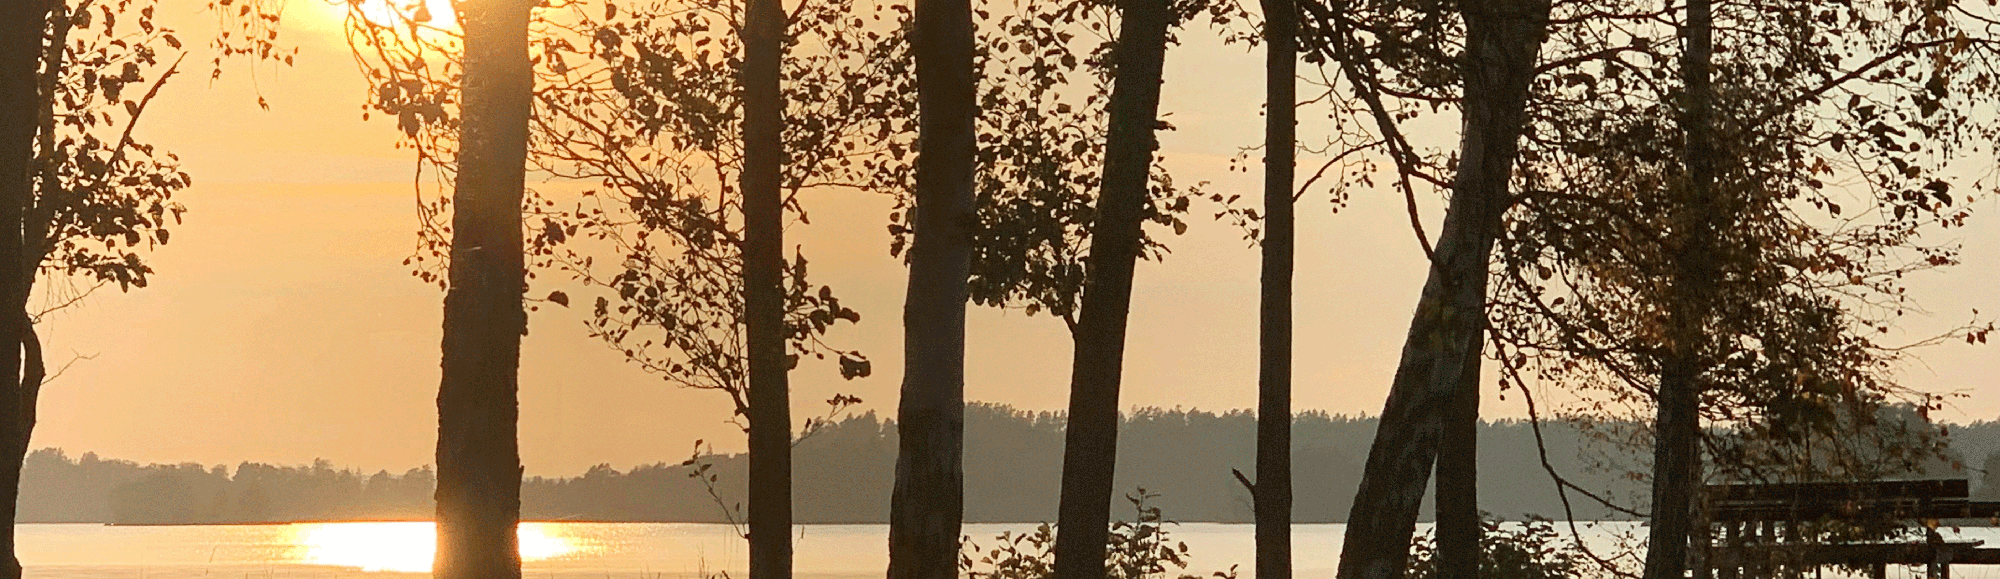 Vy över sjön Bolmen i soldis med träd i förgrunden. Foto.